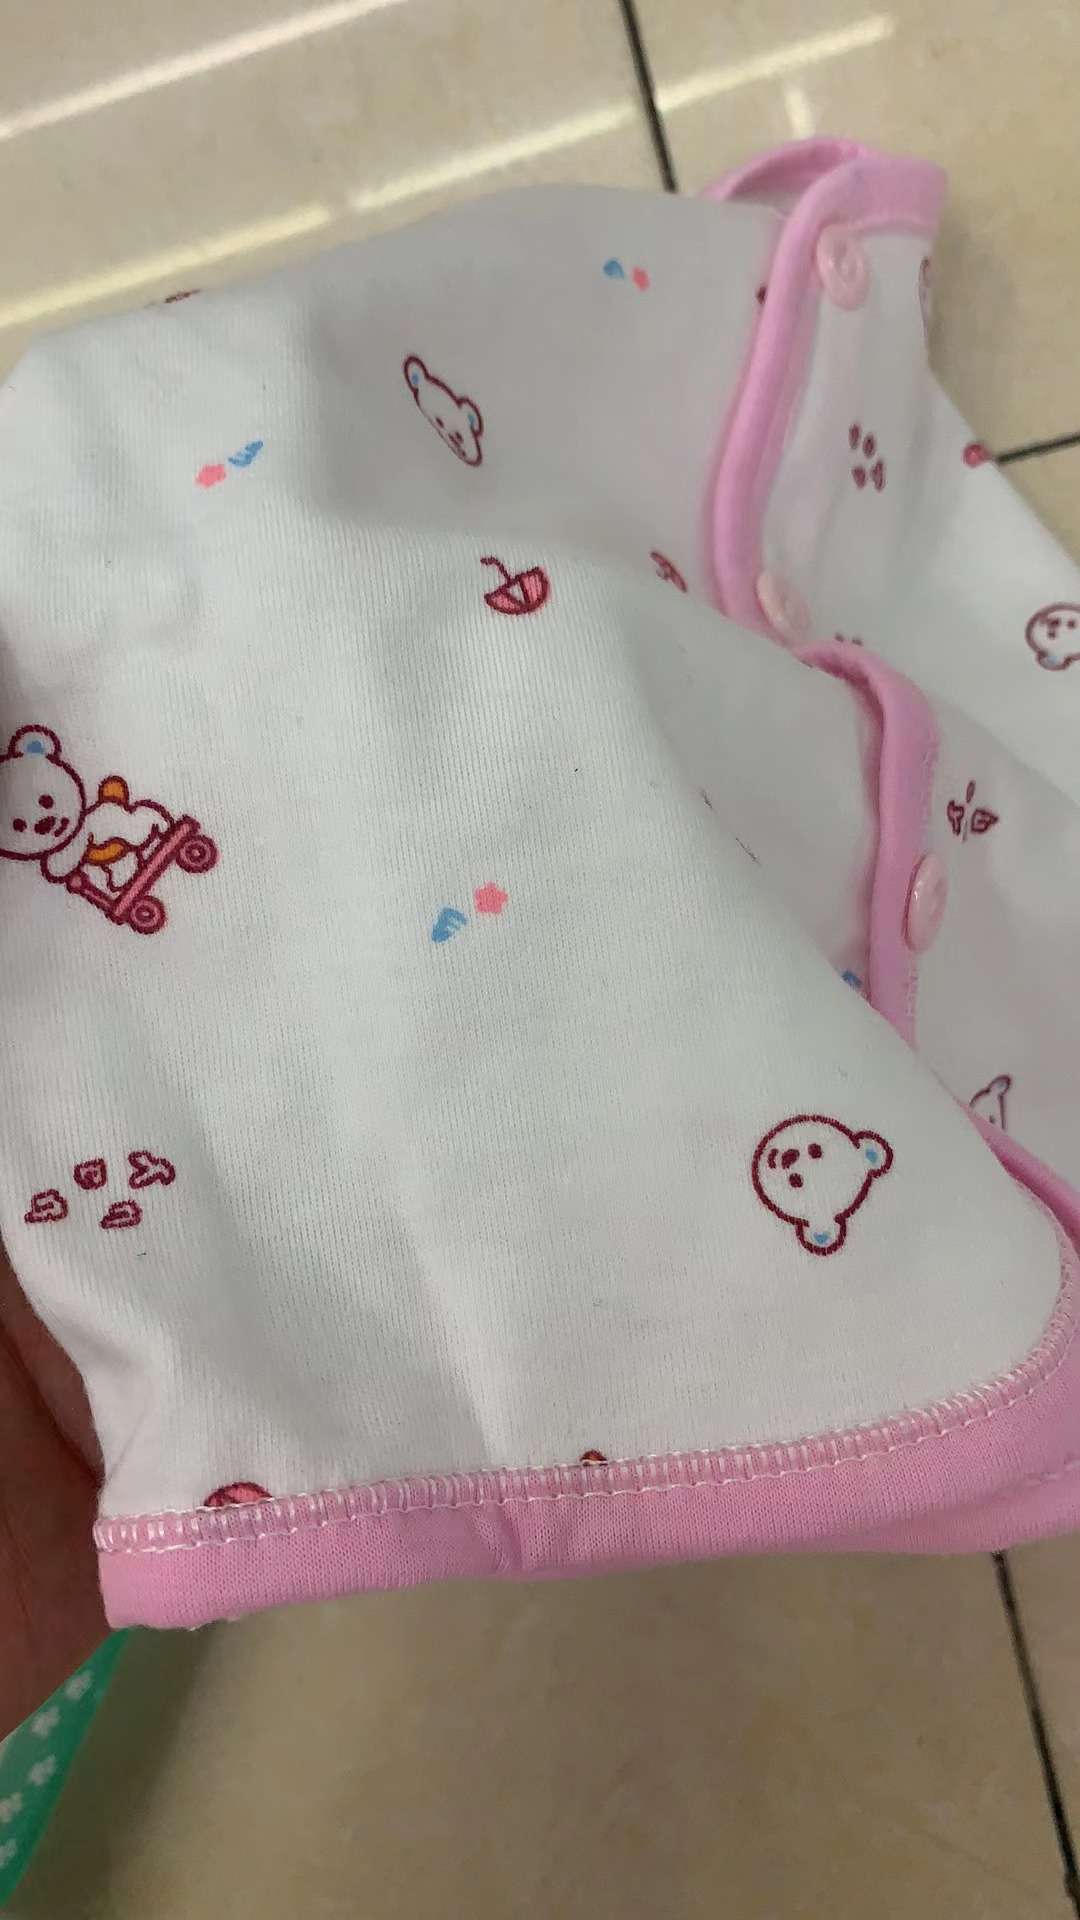 婴儿服2件套产品图